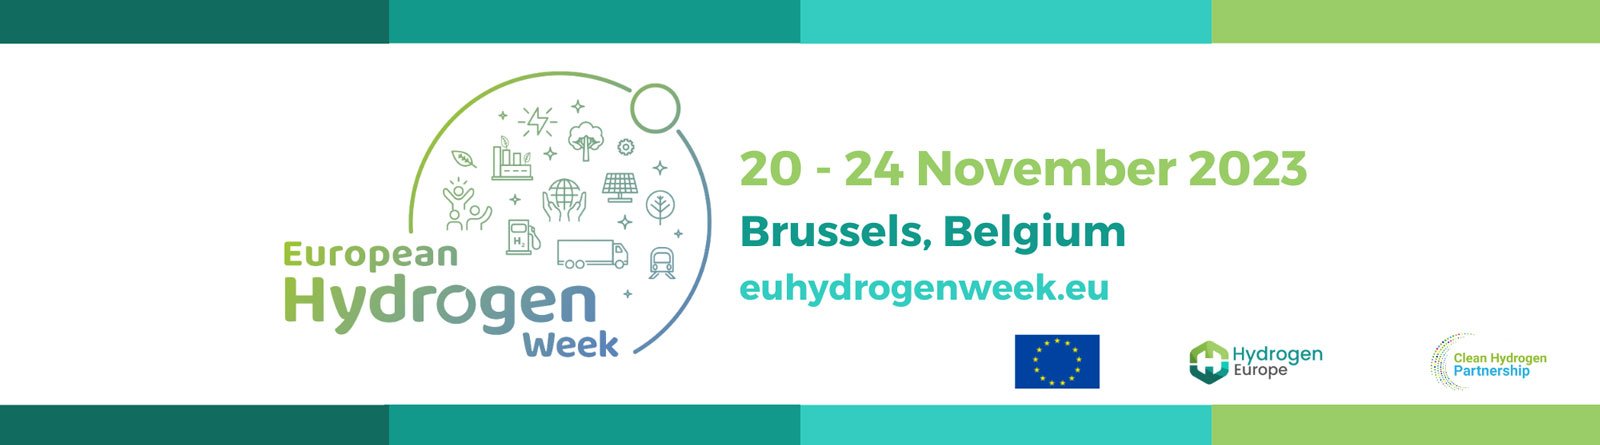 European Hydrogen Week 2023 – Brussels